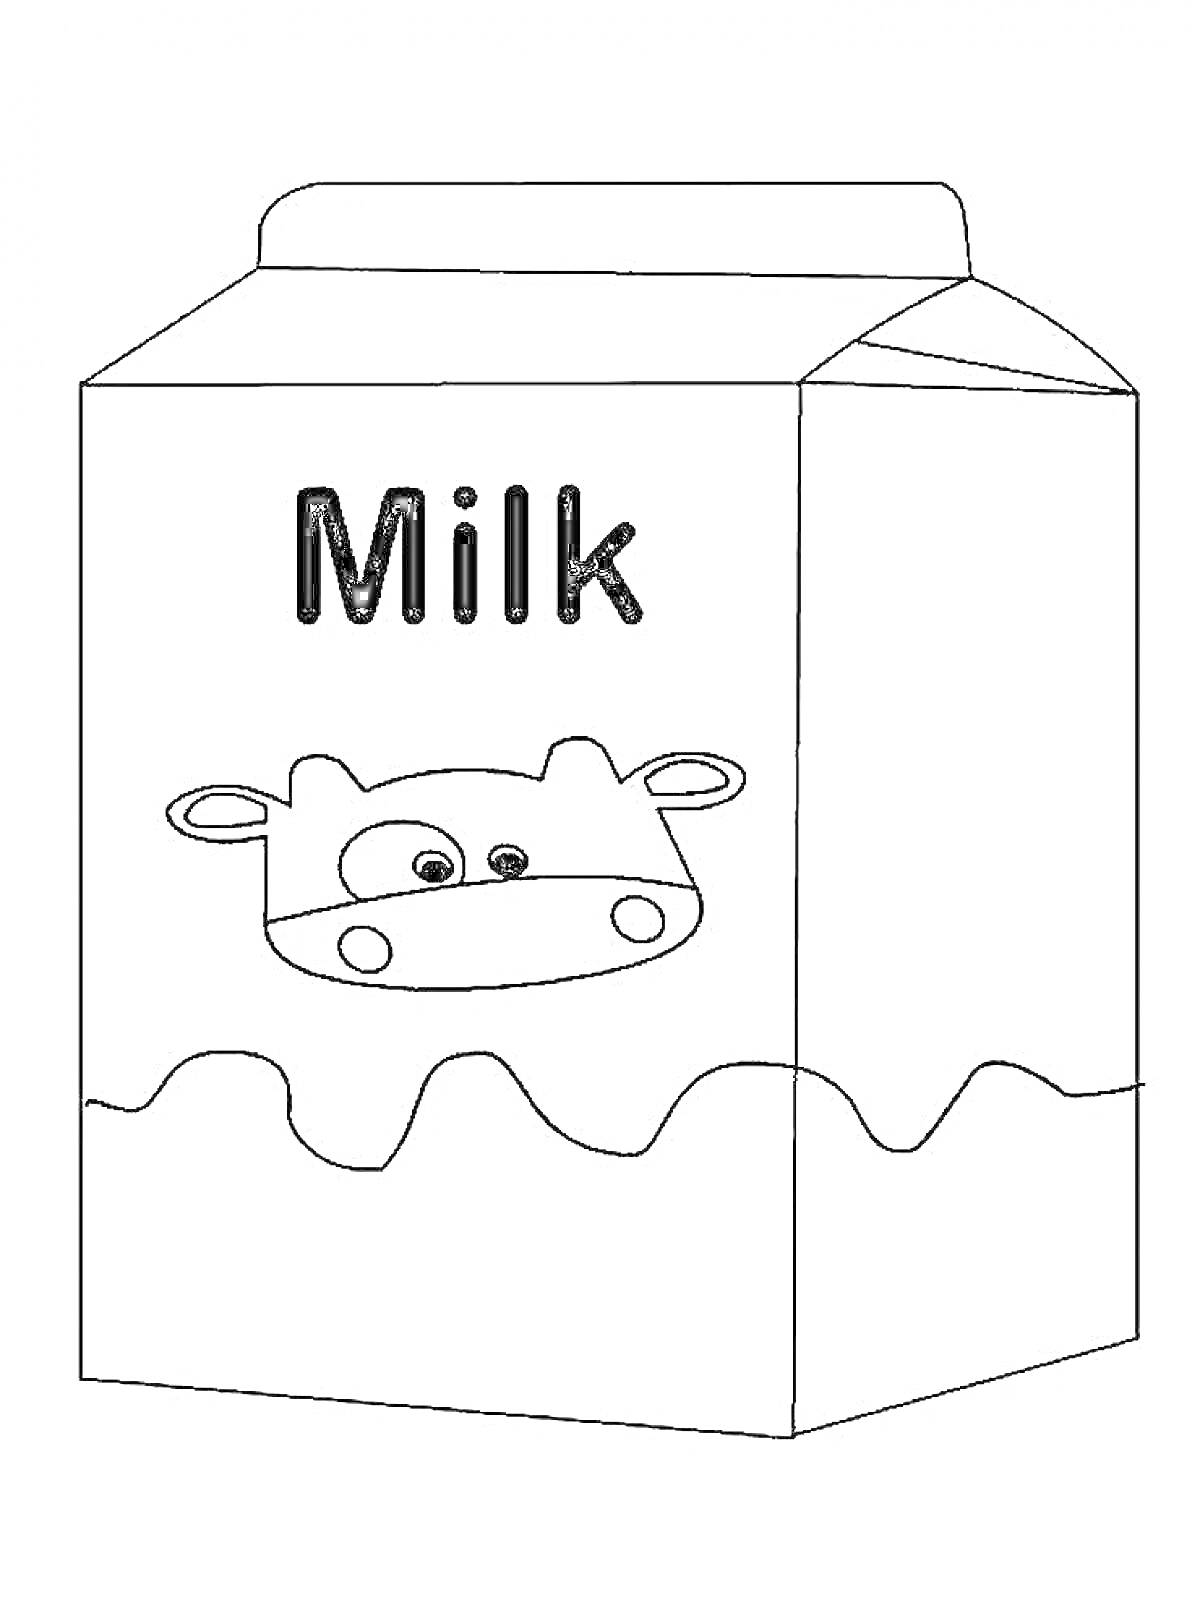 Раскраска коробка молока с изображением коровы и надписью Milk